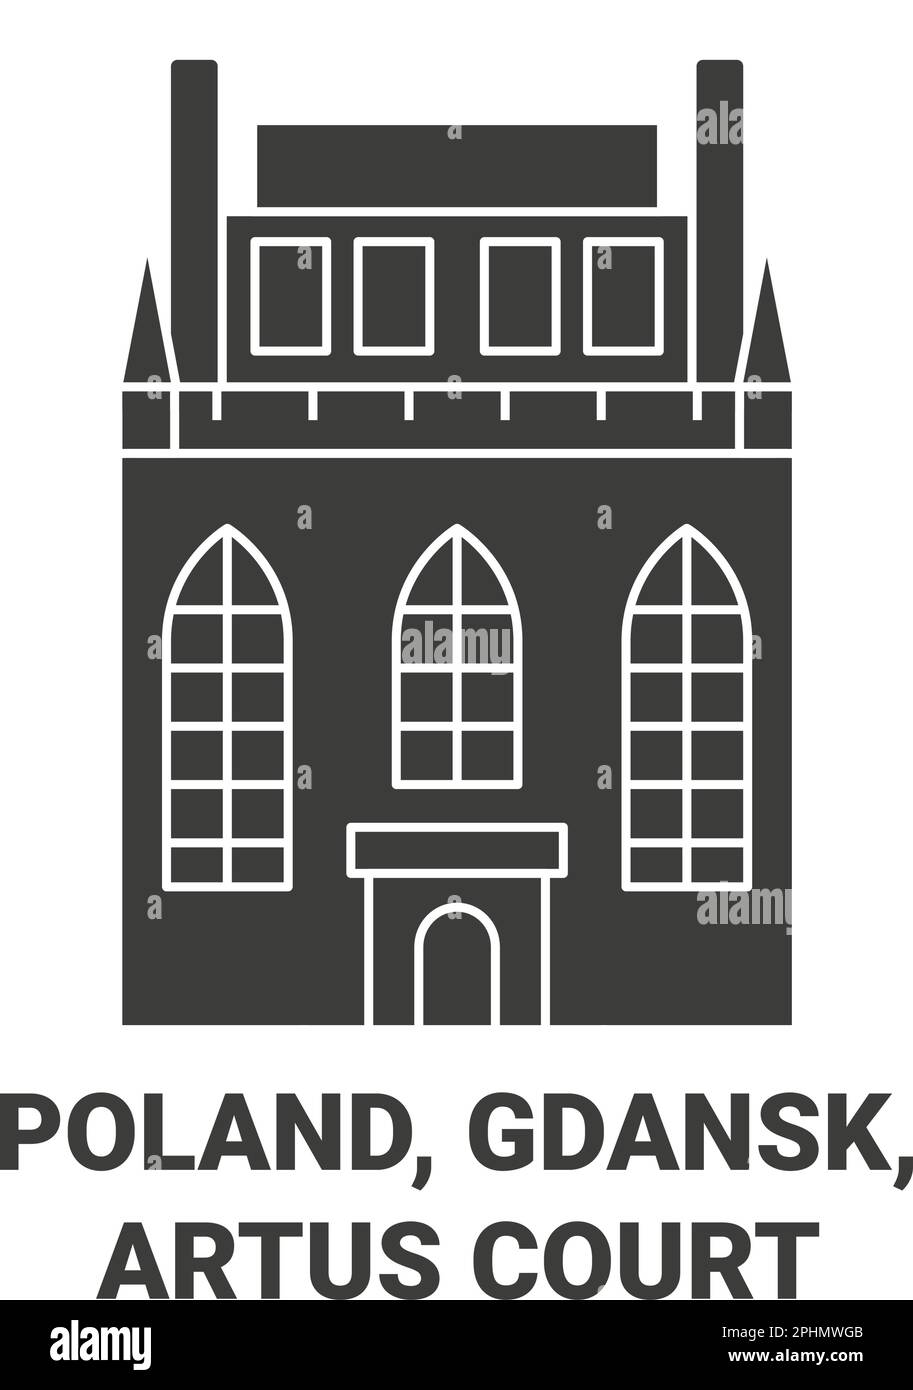 Pologne, Gdansk, Artus court Voyage repère illustration vecteur Illustration de Vecteur